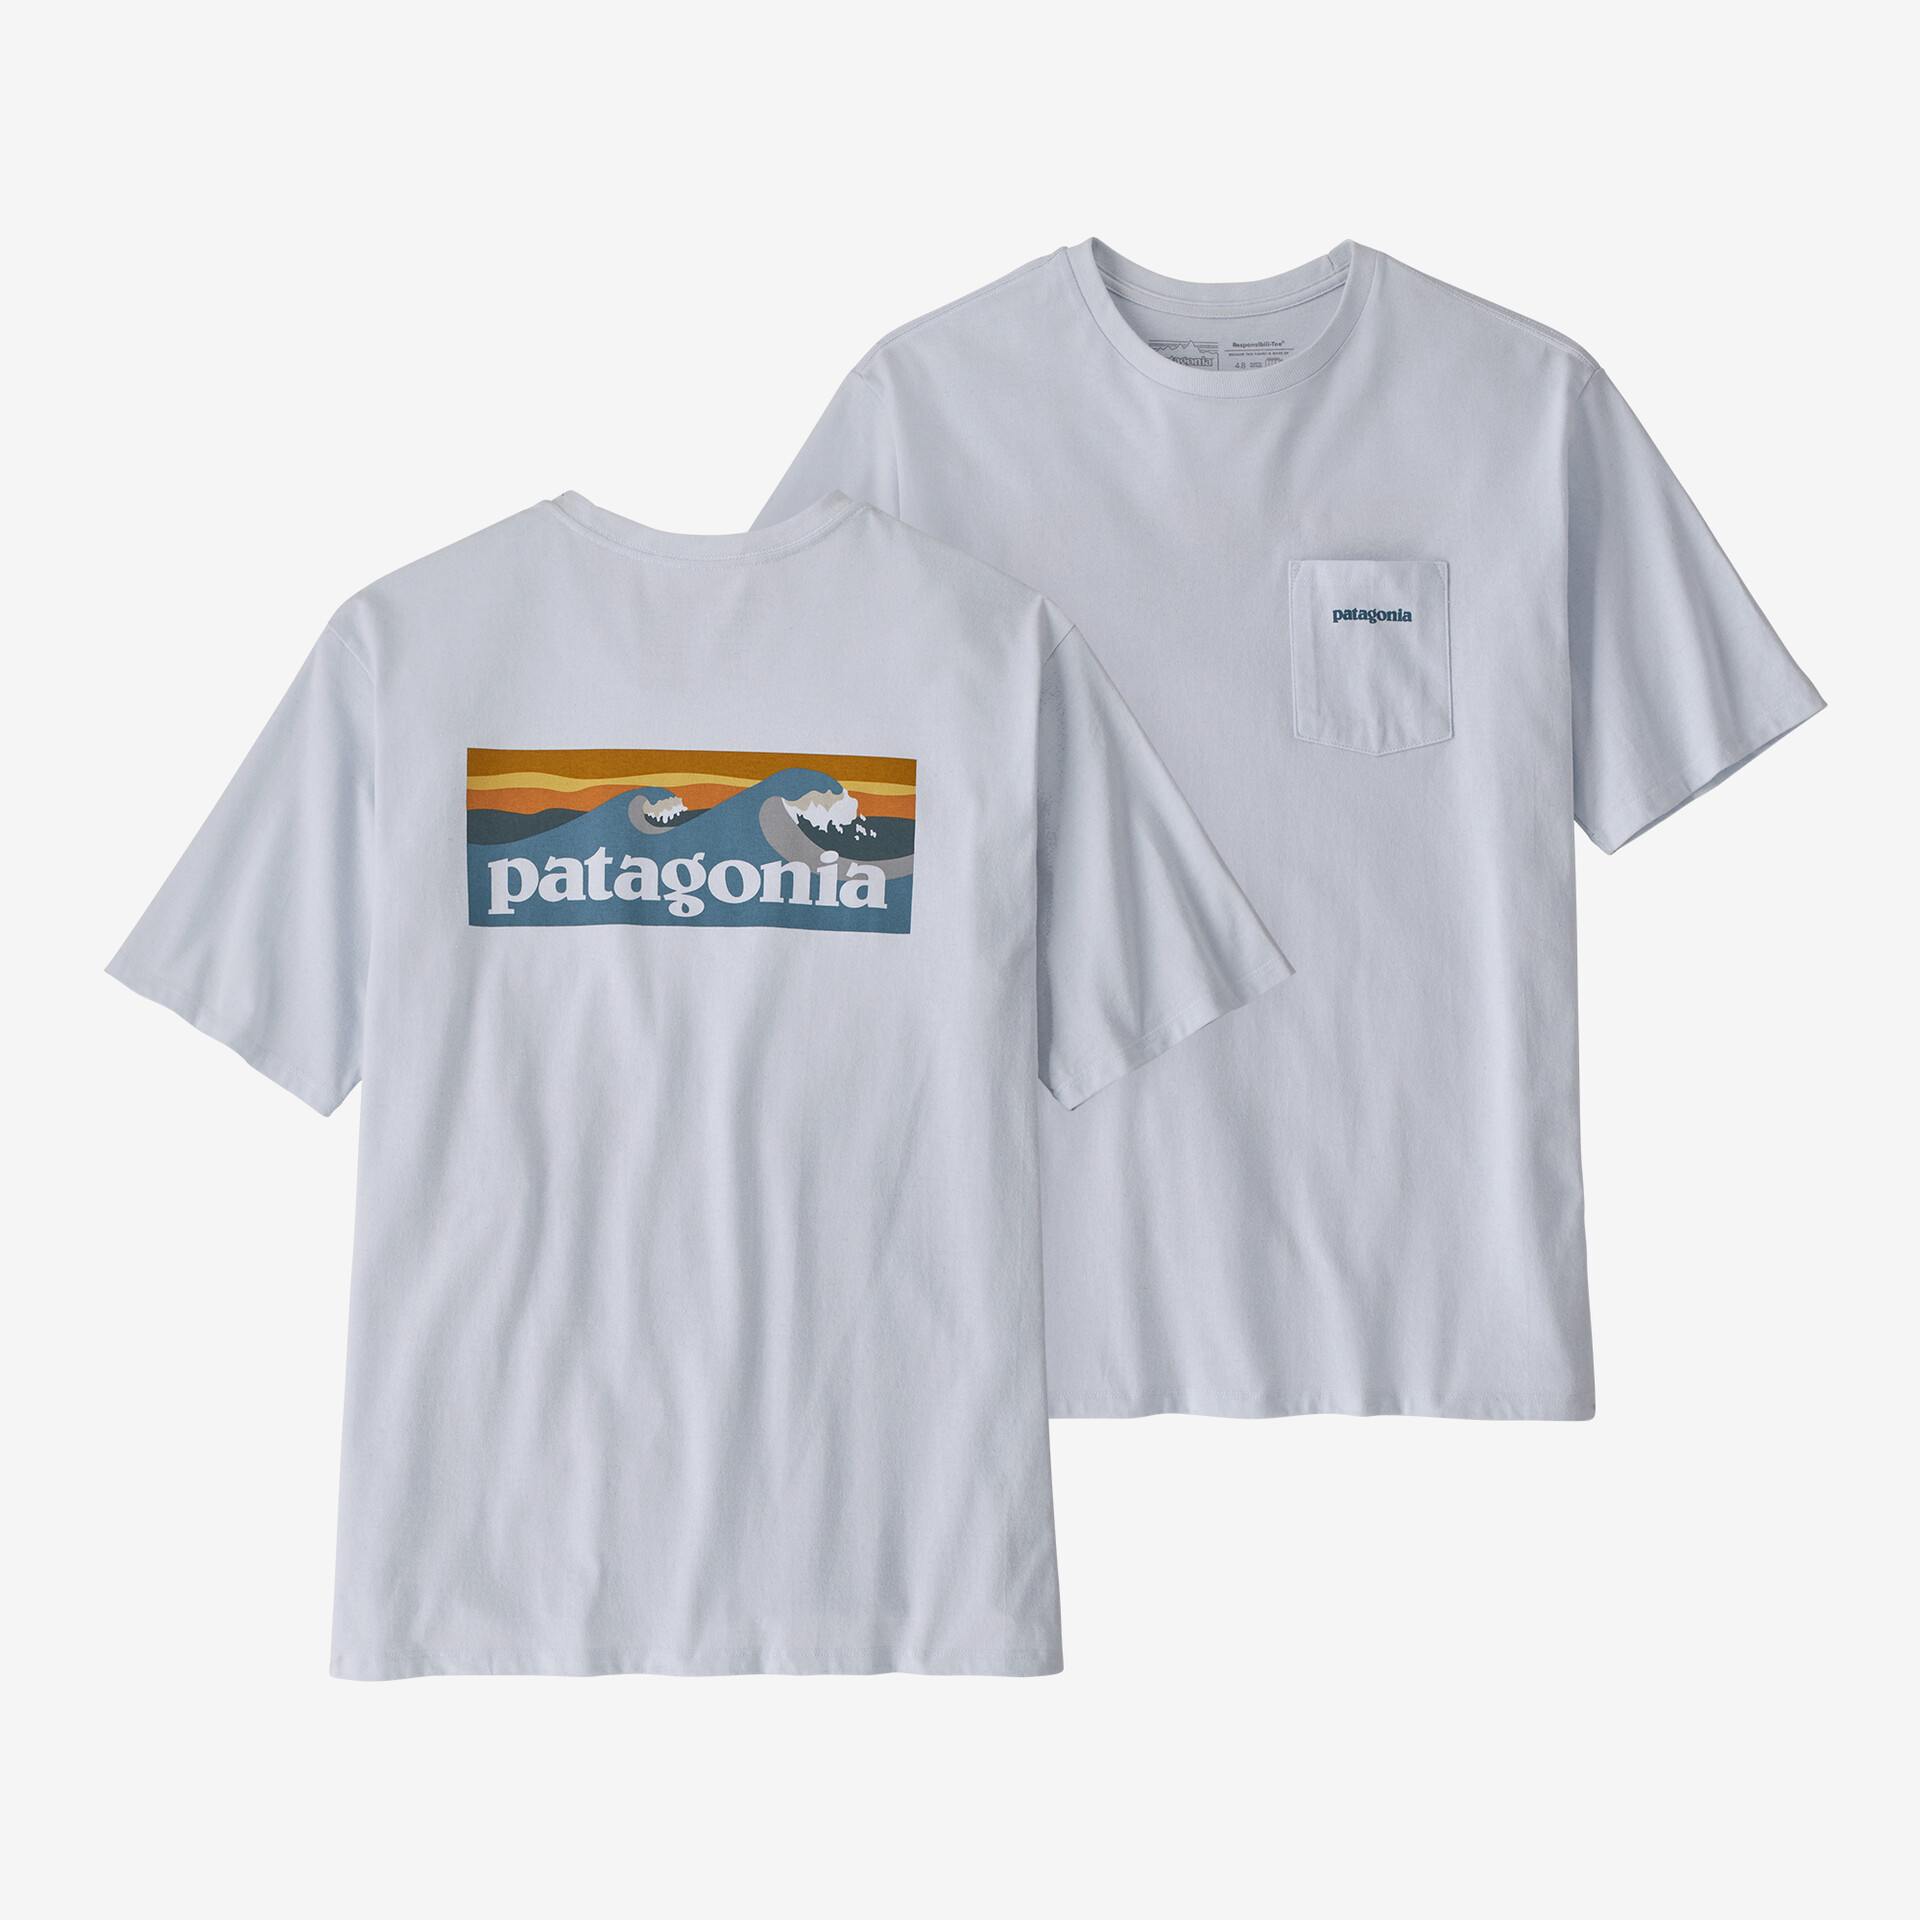 Мужская футболка с логотипом и карманом Responsibili Patagonia, белый мужская ответственная футболка с логотипом и карманом patagonia серый